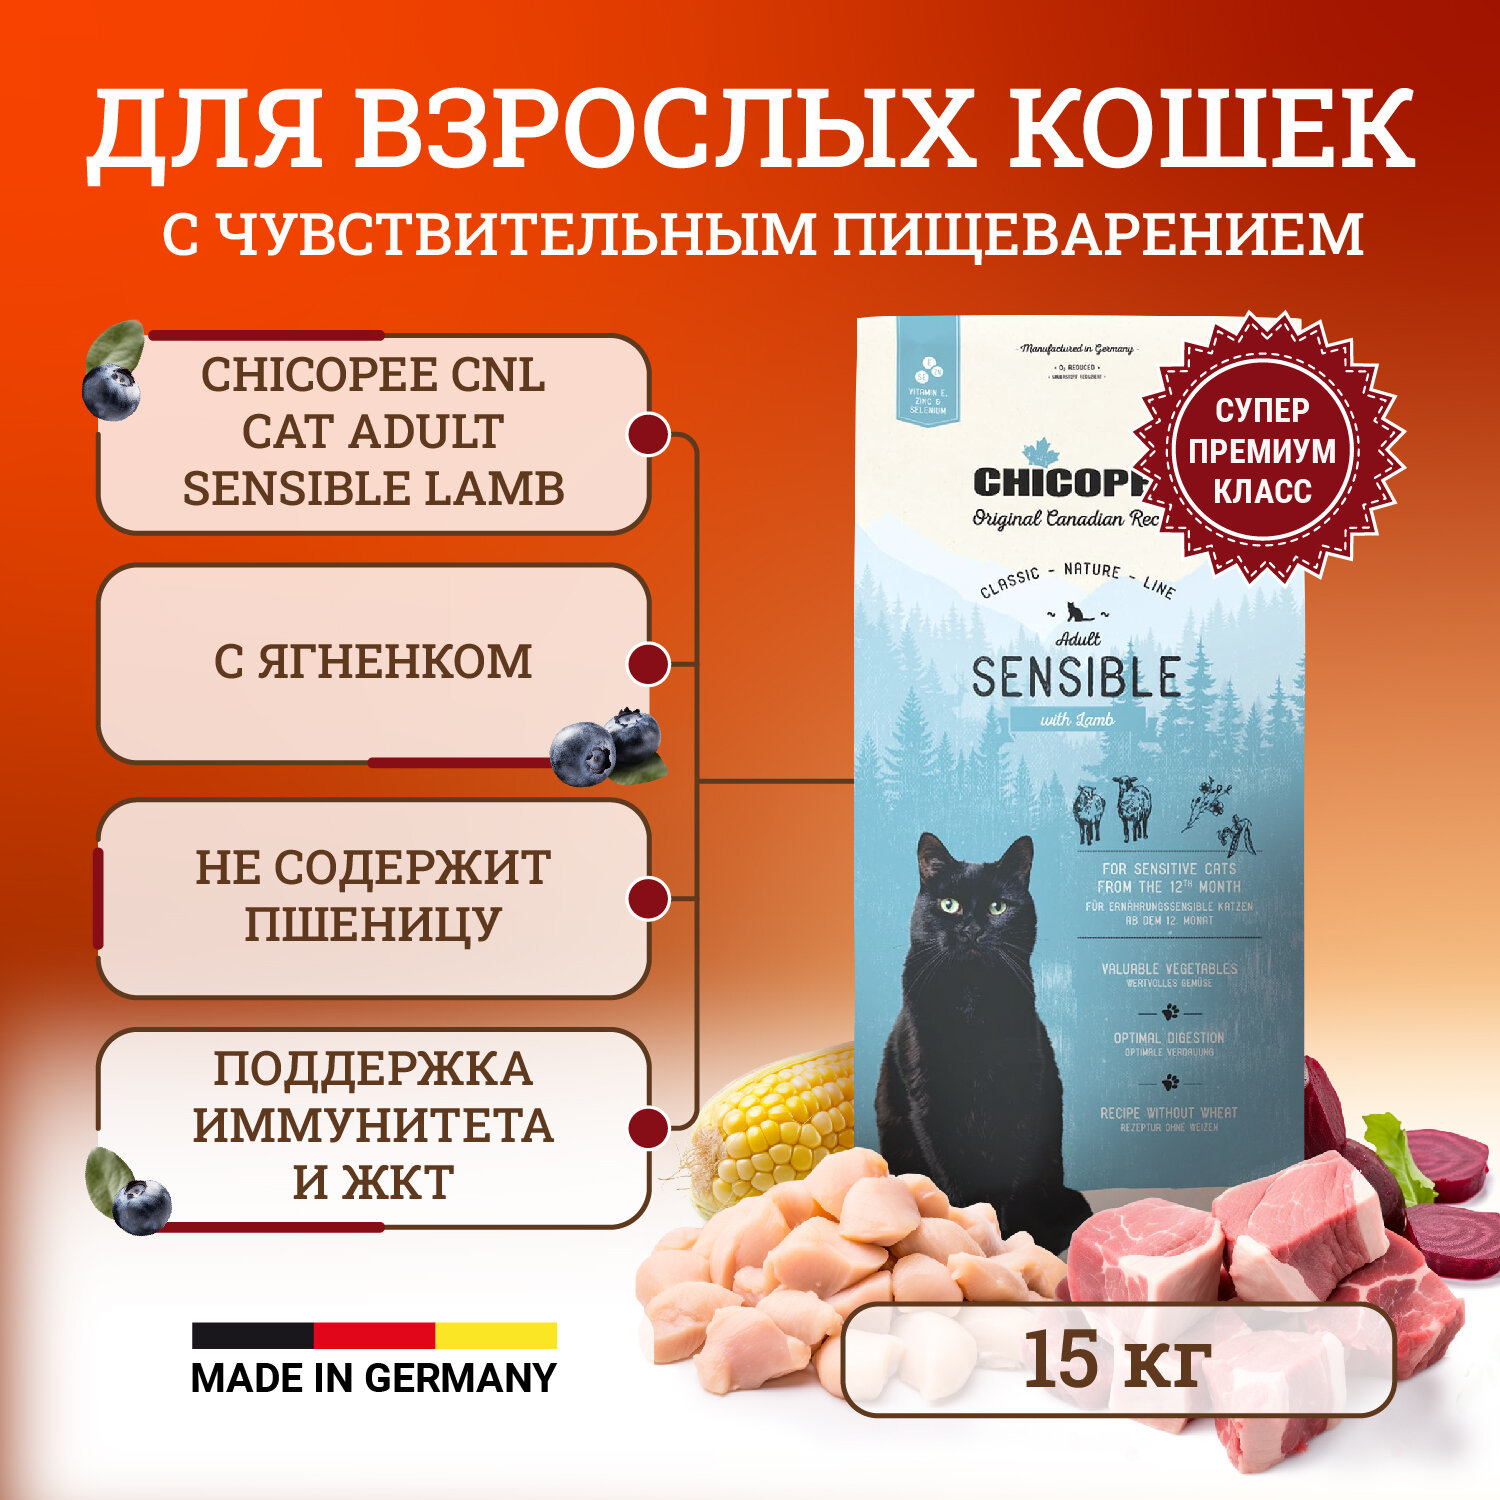 Chicopee CNL Cat Adult Sensible сухой корм для кошек с чувствительным пищеварение с ягненком - 15 кг